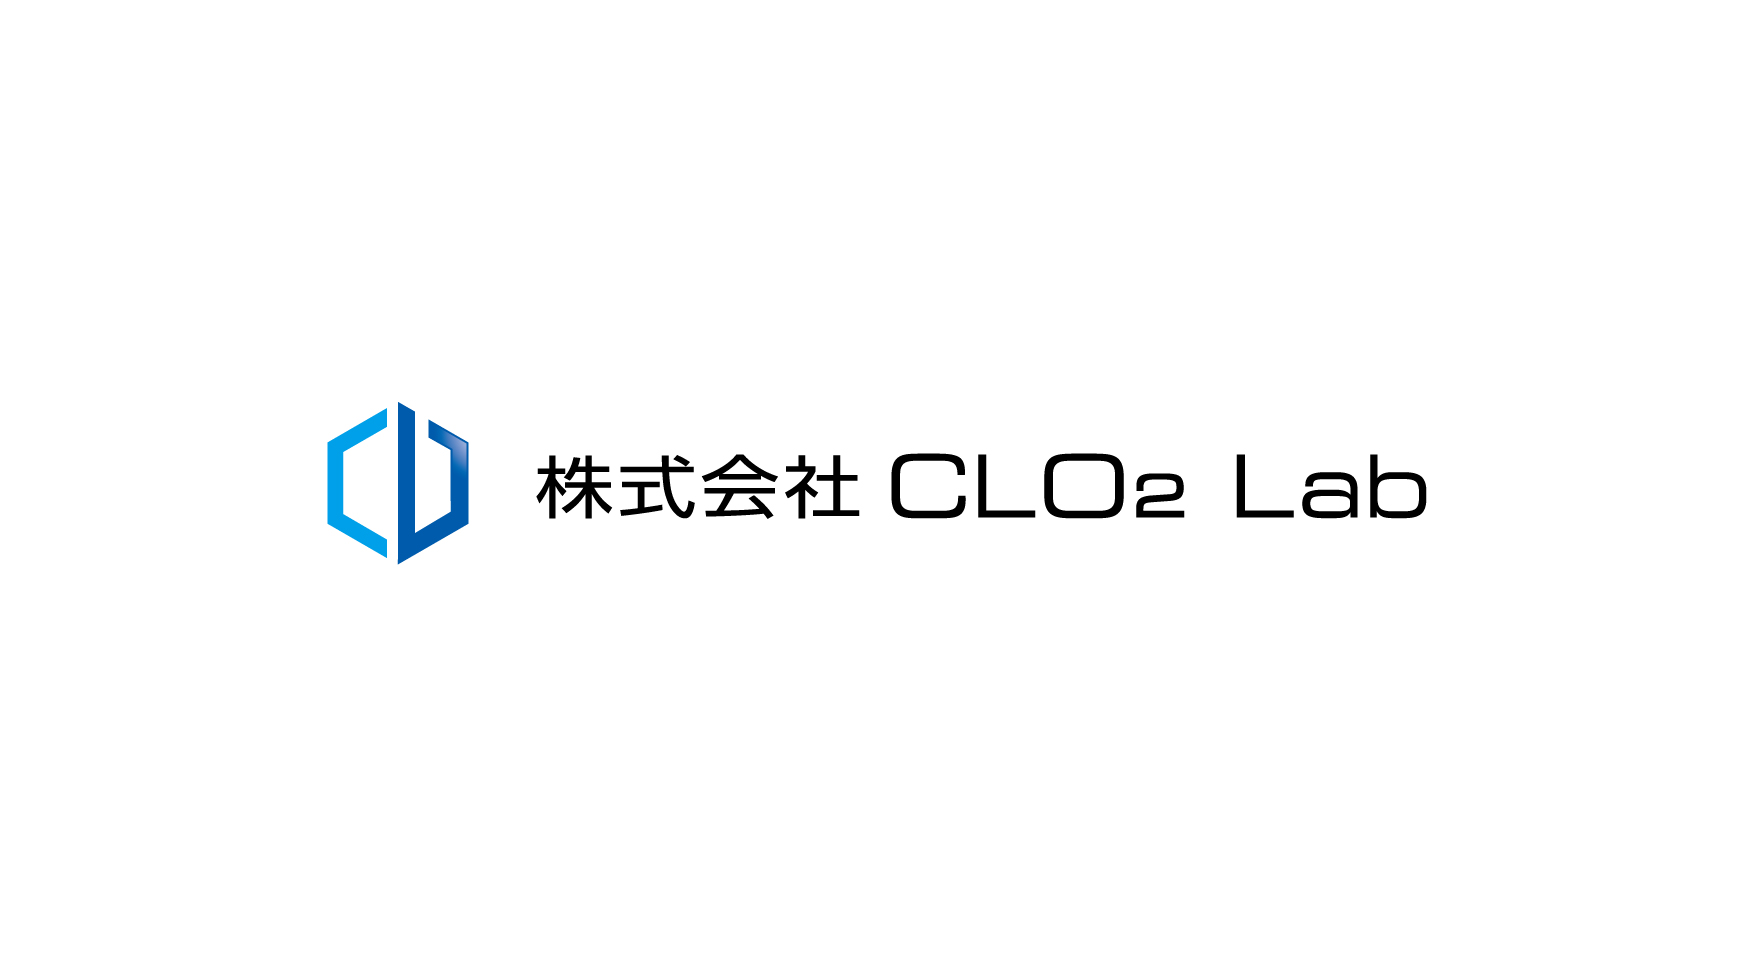 株式会社CLO2 Lab OXIDER スプレー ケース 300ml 97031